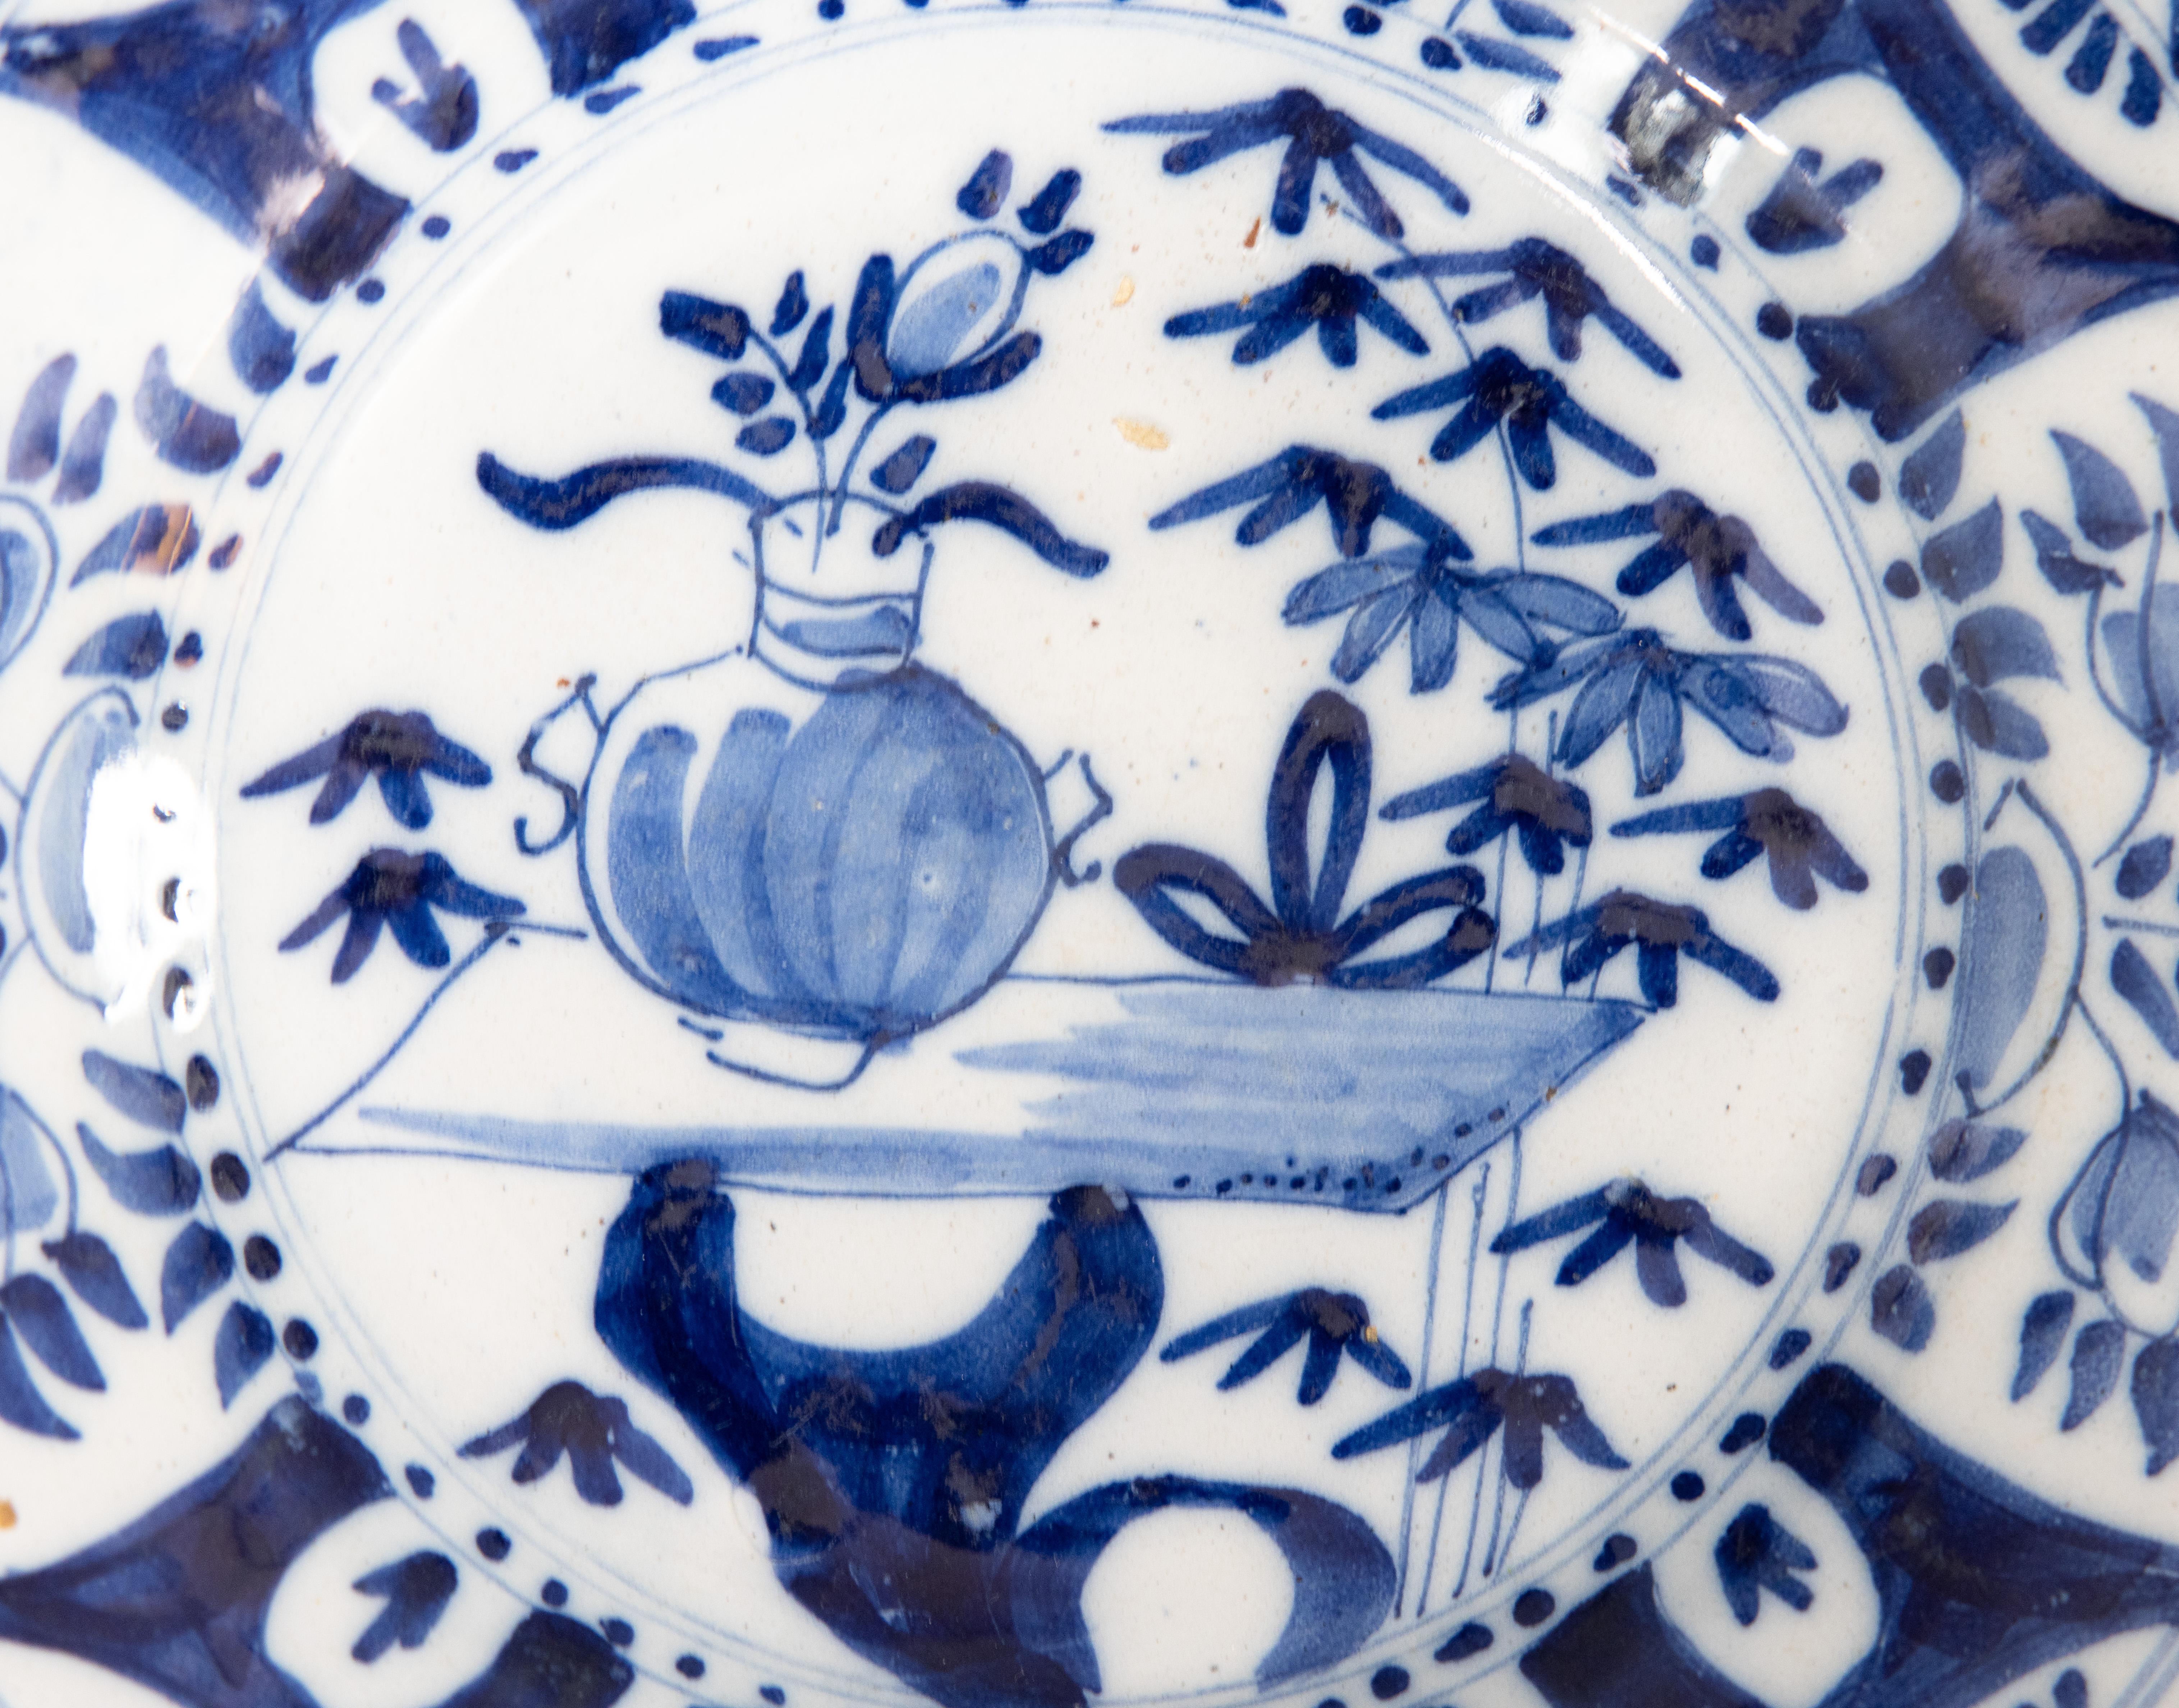 Eine schöne antike 18. Jahrhundert Dutch Delft Chinoiserie handgemalten floralen Teller in leuchtend kobaltblau und weiß. Es würde an einer Wand oder in einem Regal in jedem Raum fabelhaft aussehen.

ABMESSUNGEN
9 